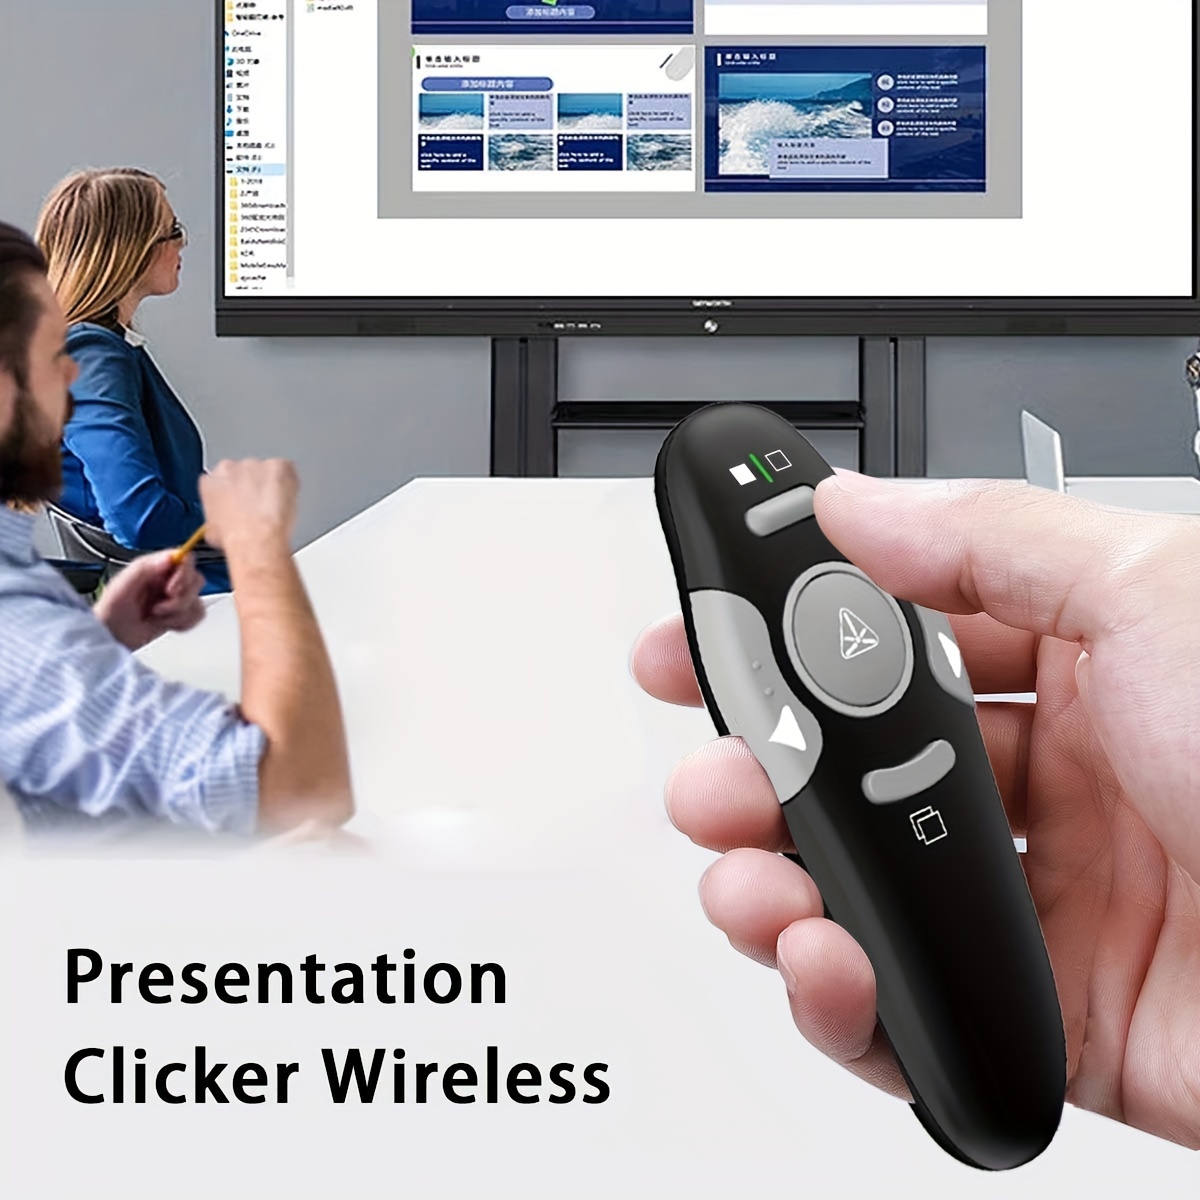 Presentation Clicker Pointer,2.4GHz Wireless Presenter Remote Presenter  Clicker for Slideshow PowerPoint Presentation Pointer for Mac, Keynote